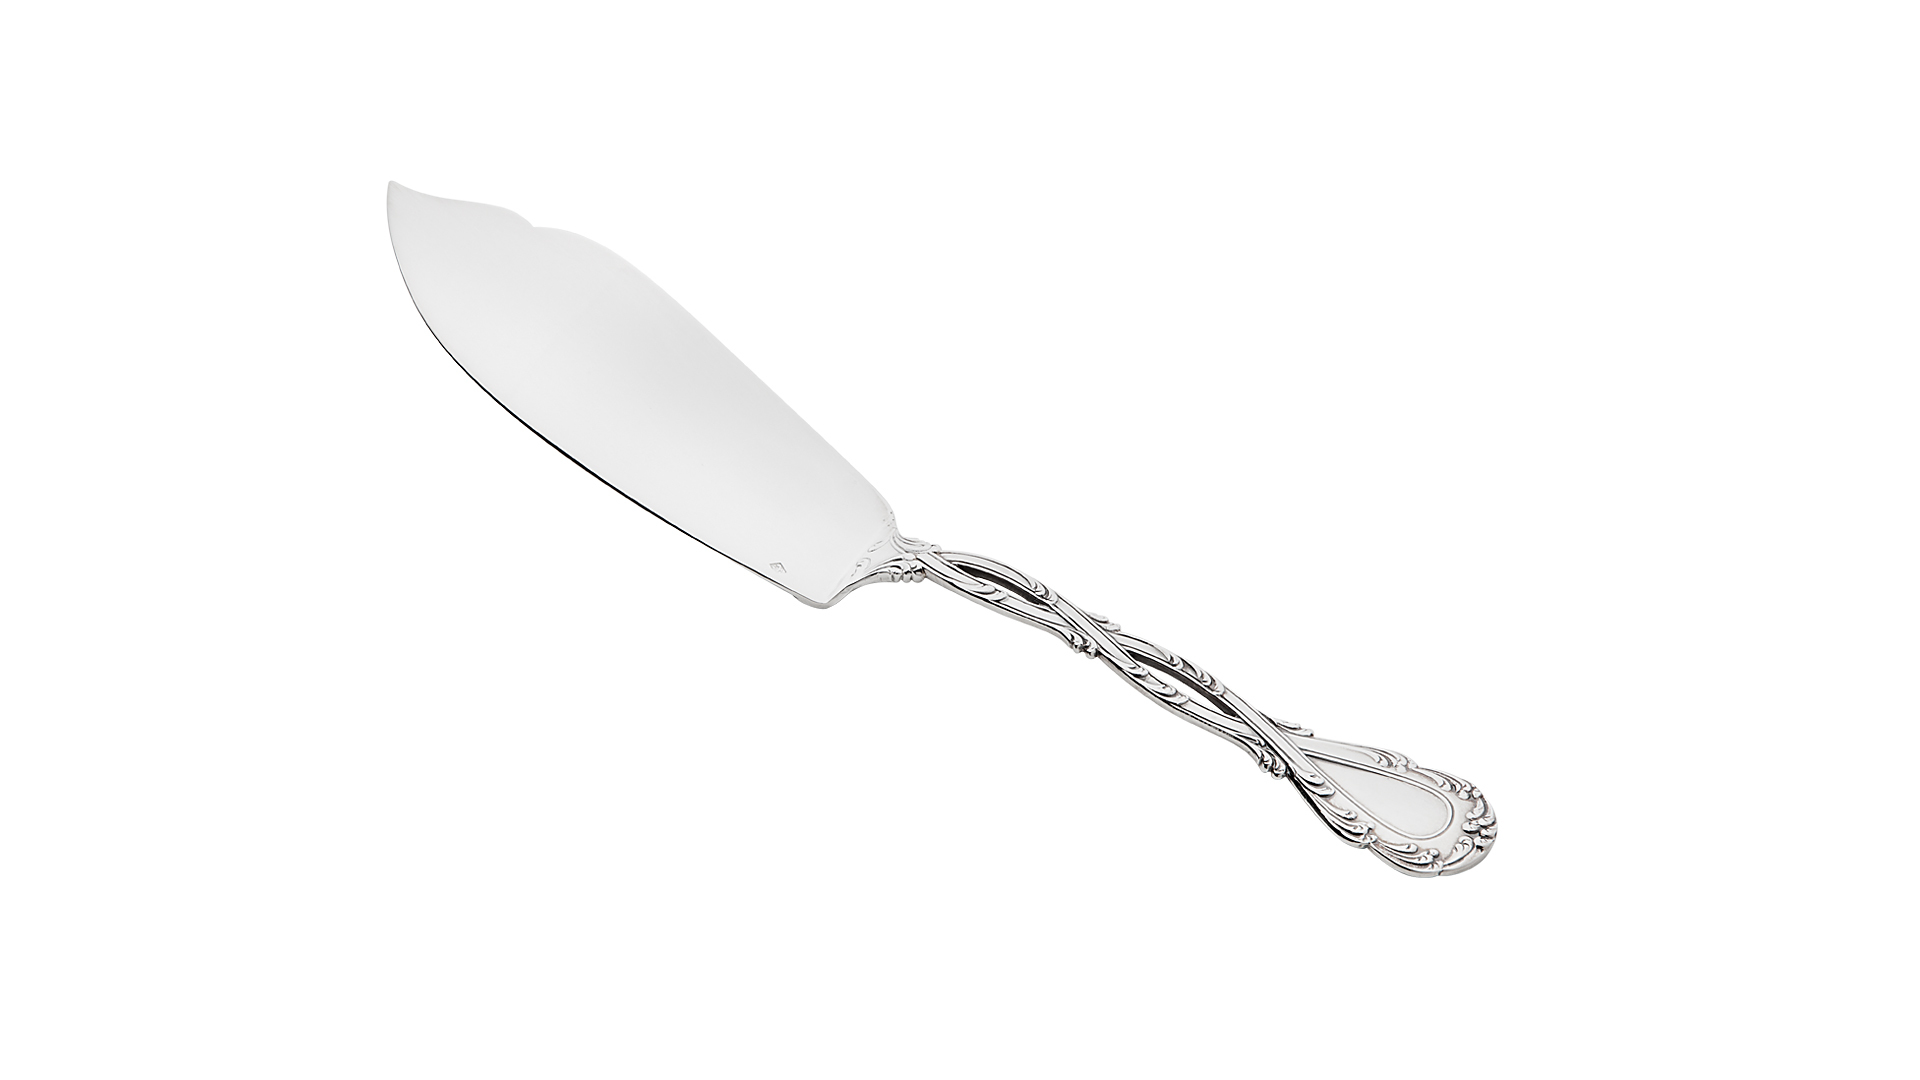 Нож для рыбы сервировочный Odiot Трианон 26,7 см, серебро 925